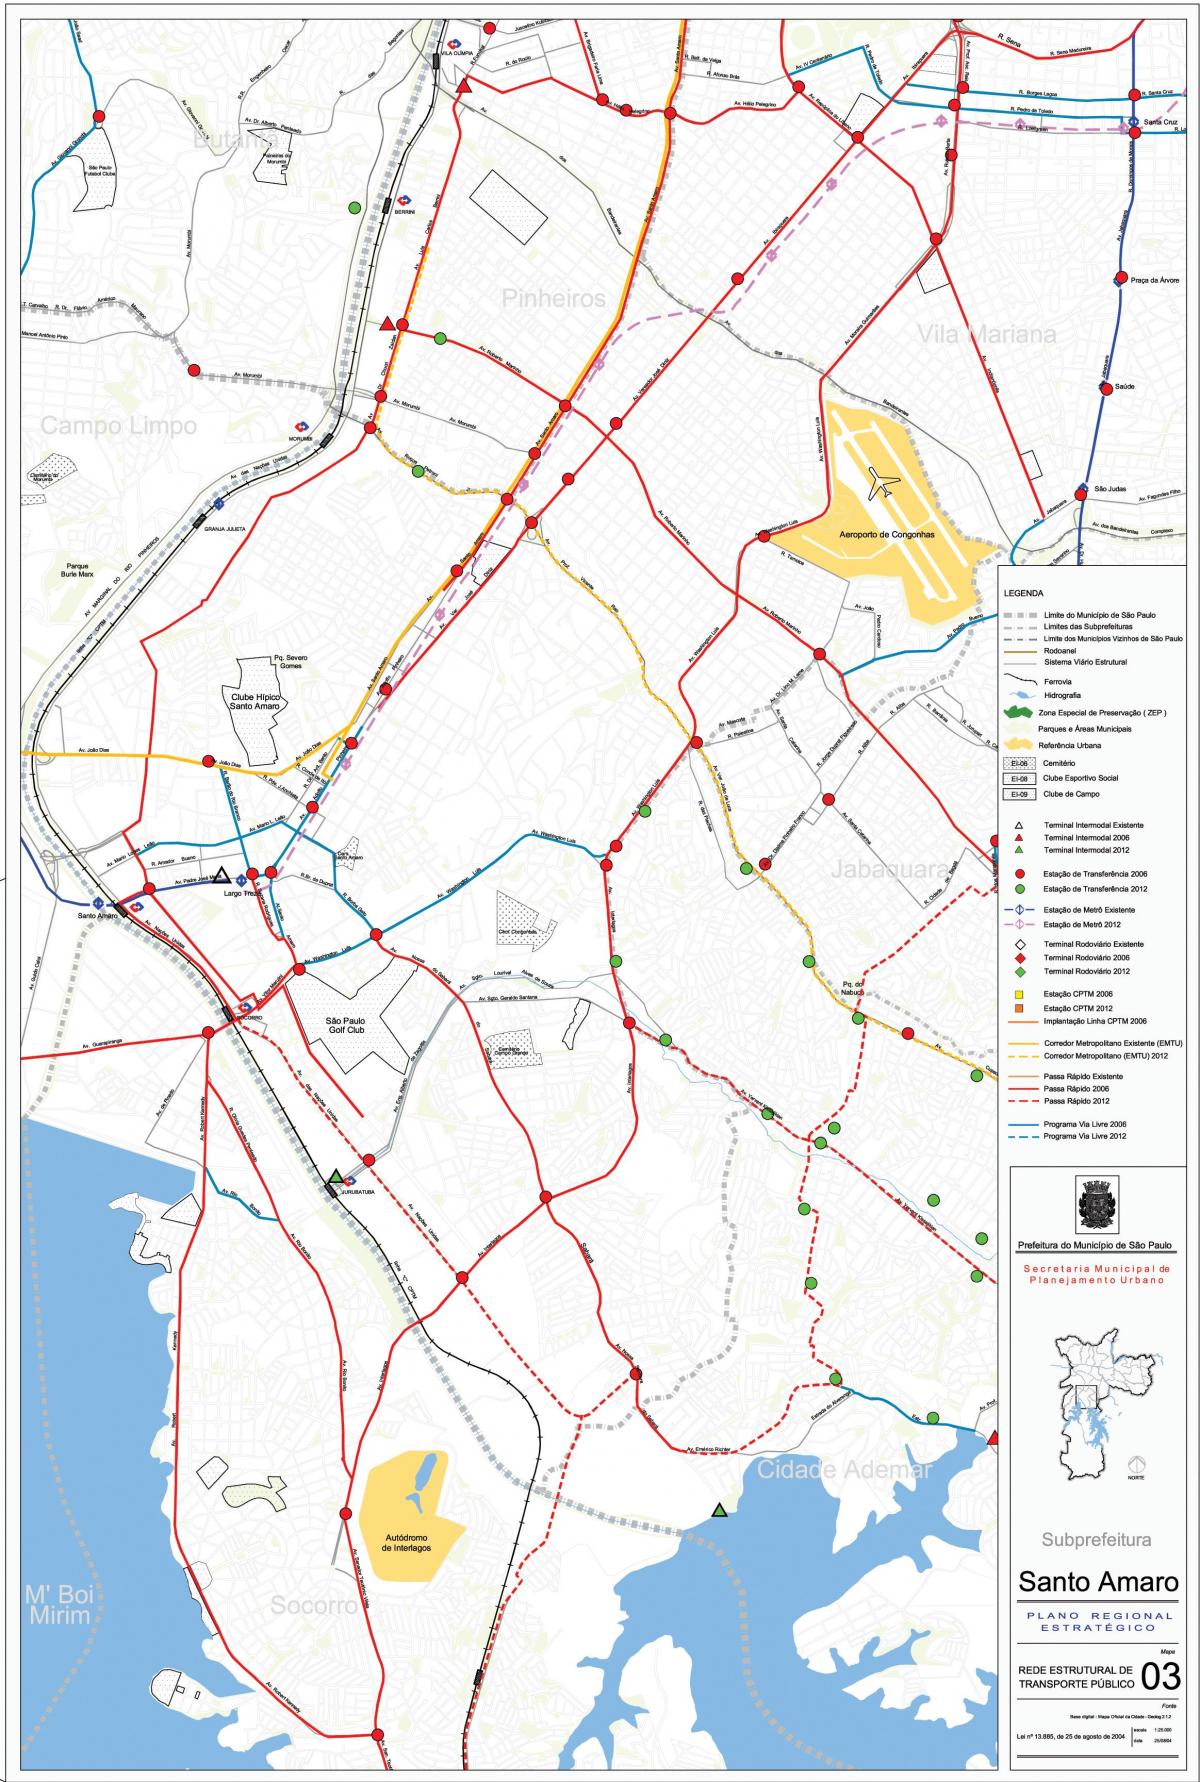 Kart Санту-Амару San-Paulo - ictimai nəqliyyat